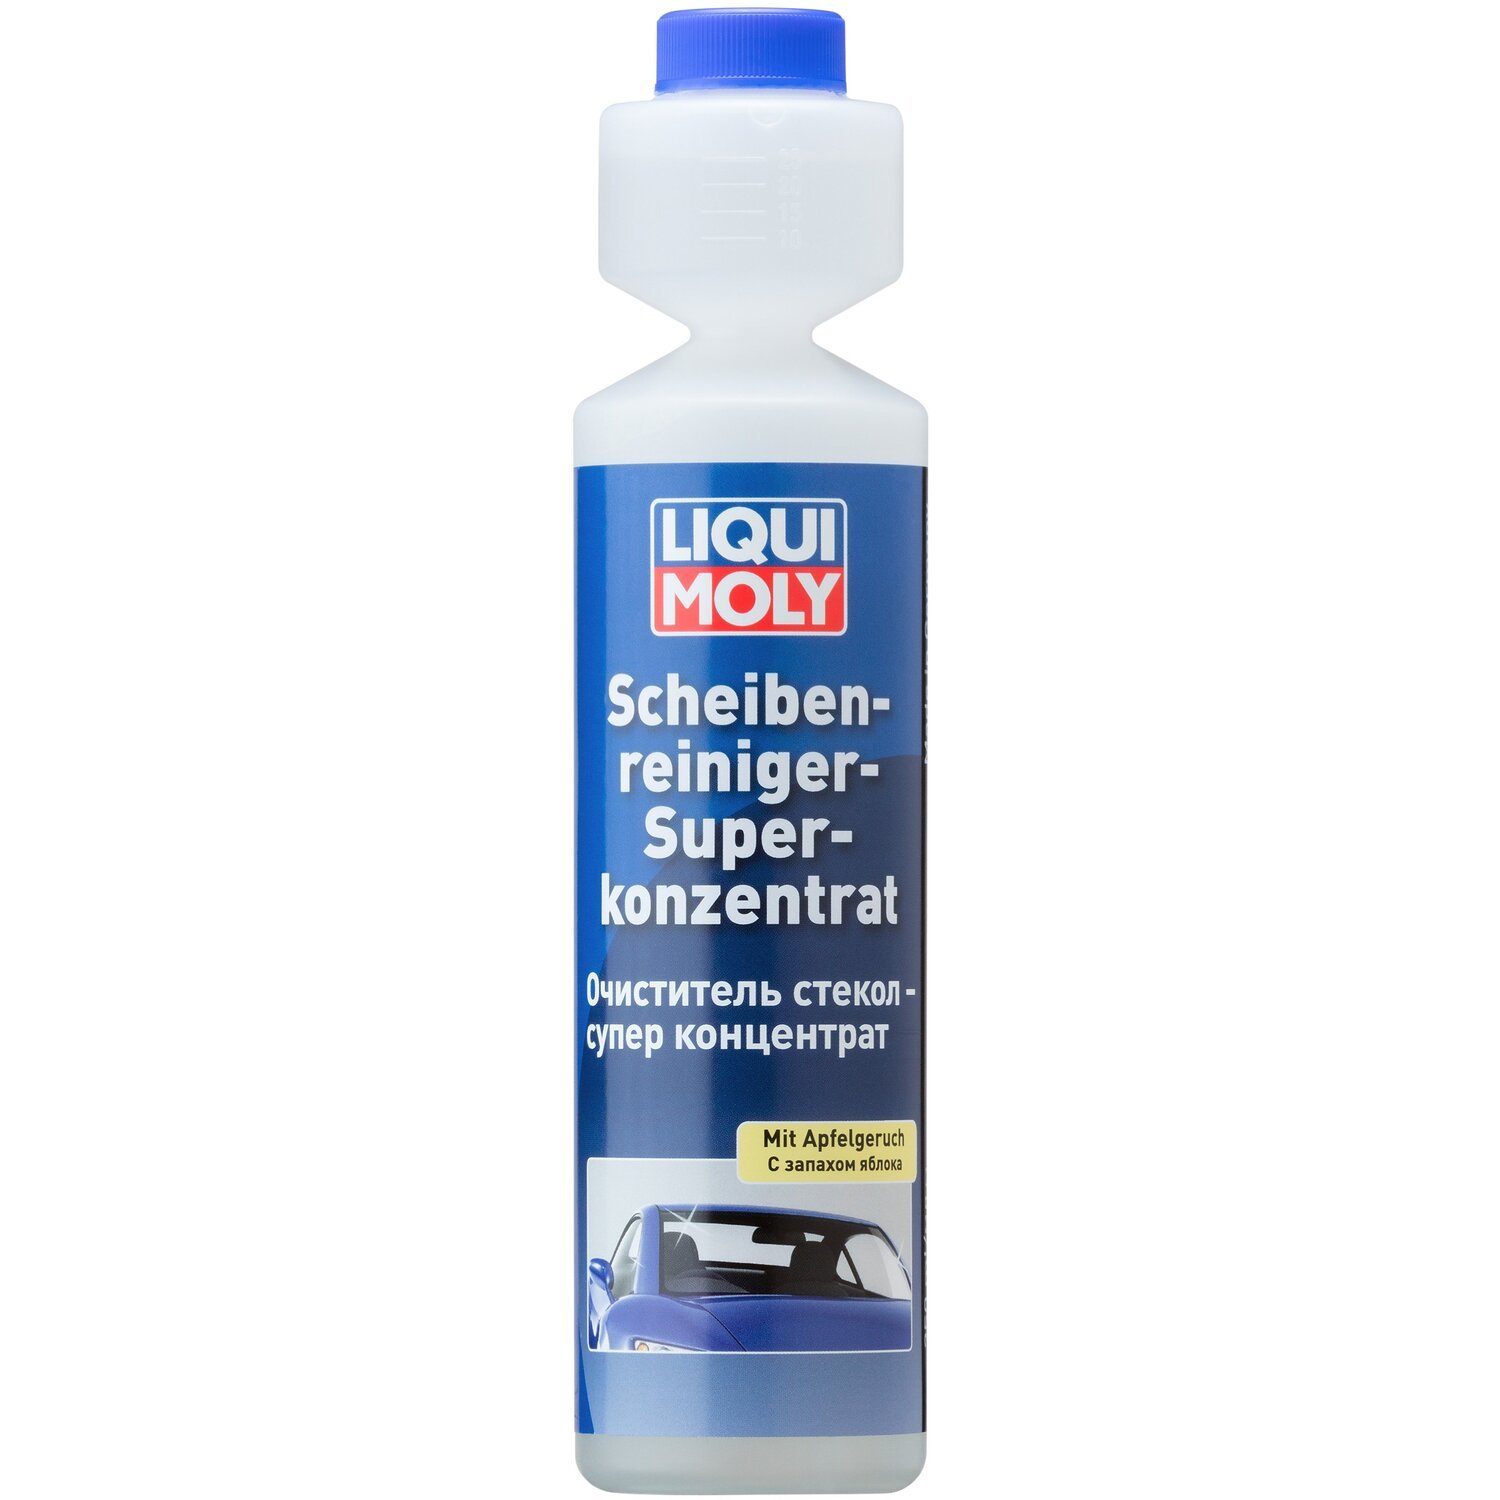 Очиститель Liqui Moly для стекла - 1:100 Яблоко Scheiben-Reiniger-Super-Konz (Mit Apfelgeruch) 0,25л (4100420023804) фото 